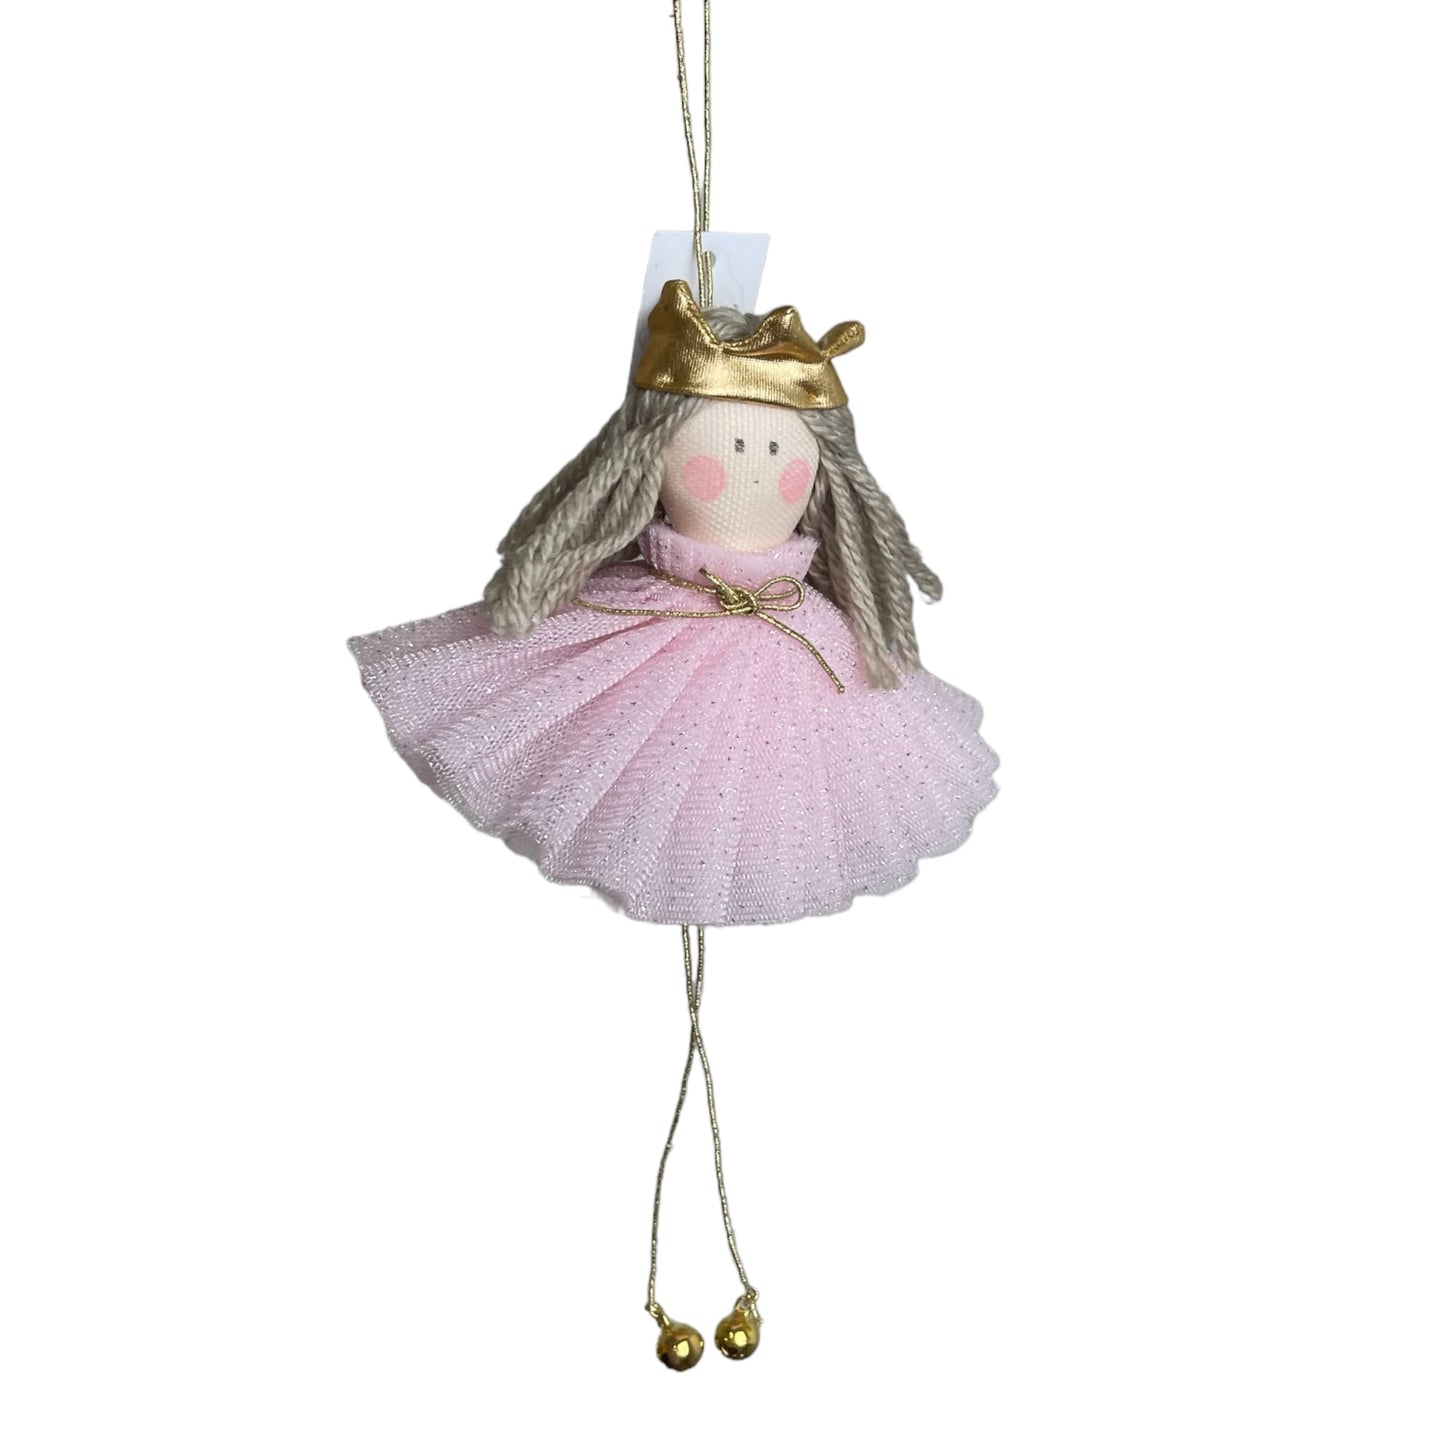 Principessa con campanelline - Bomboniere e idee regalo